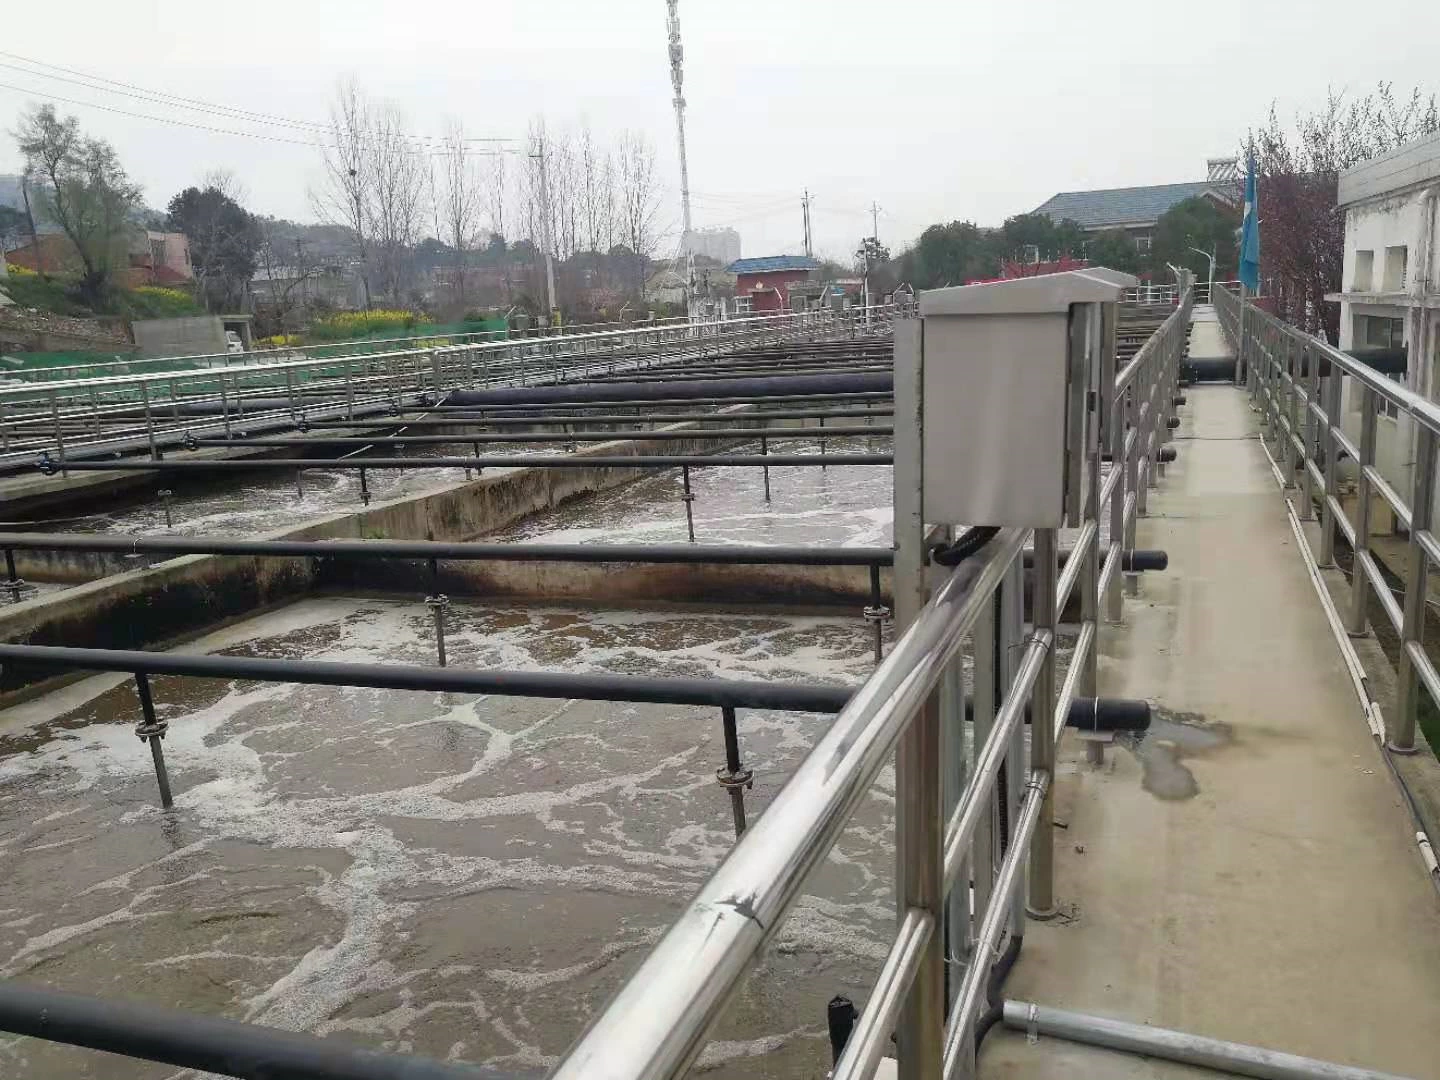 Producto analizador de líquidos Supmea utilizado en la planta de tratamiento de aguas residuales de Xiaogan